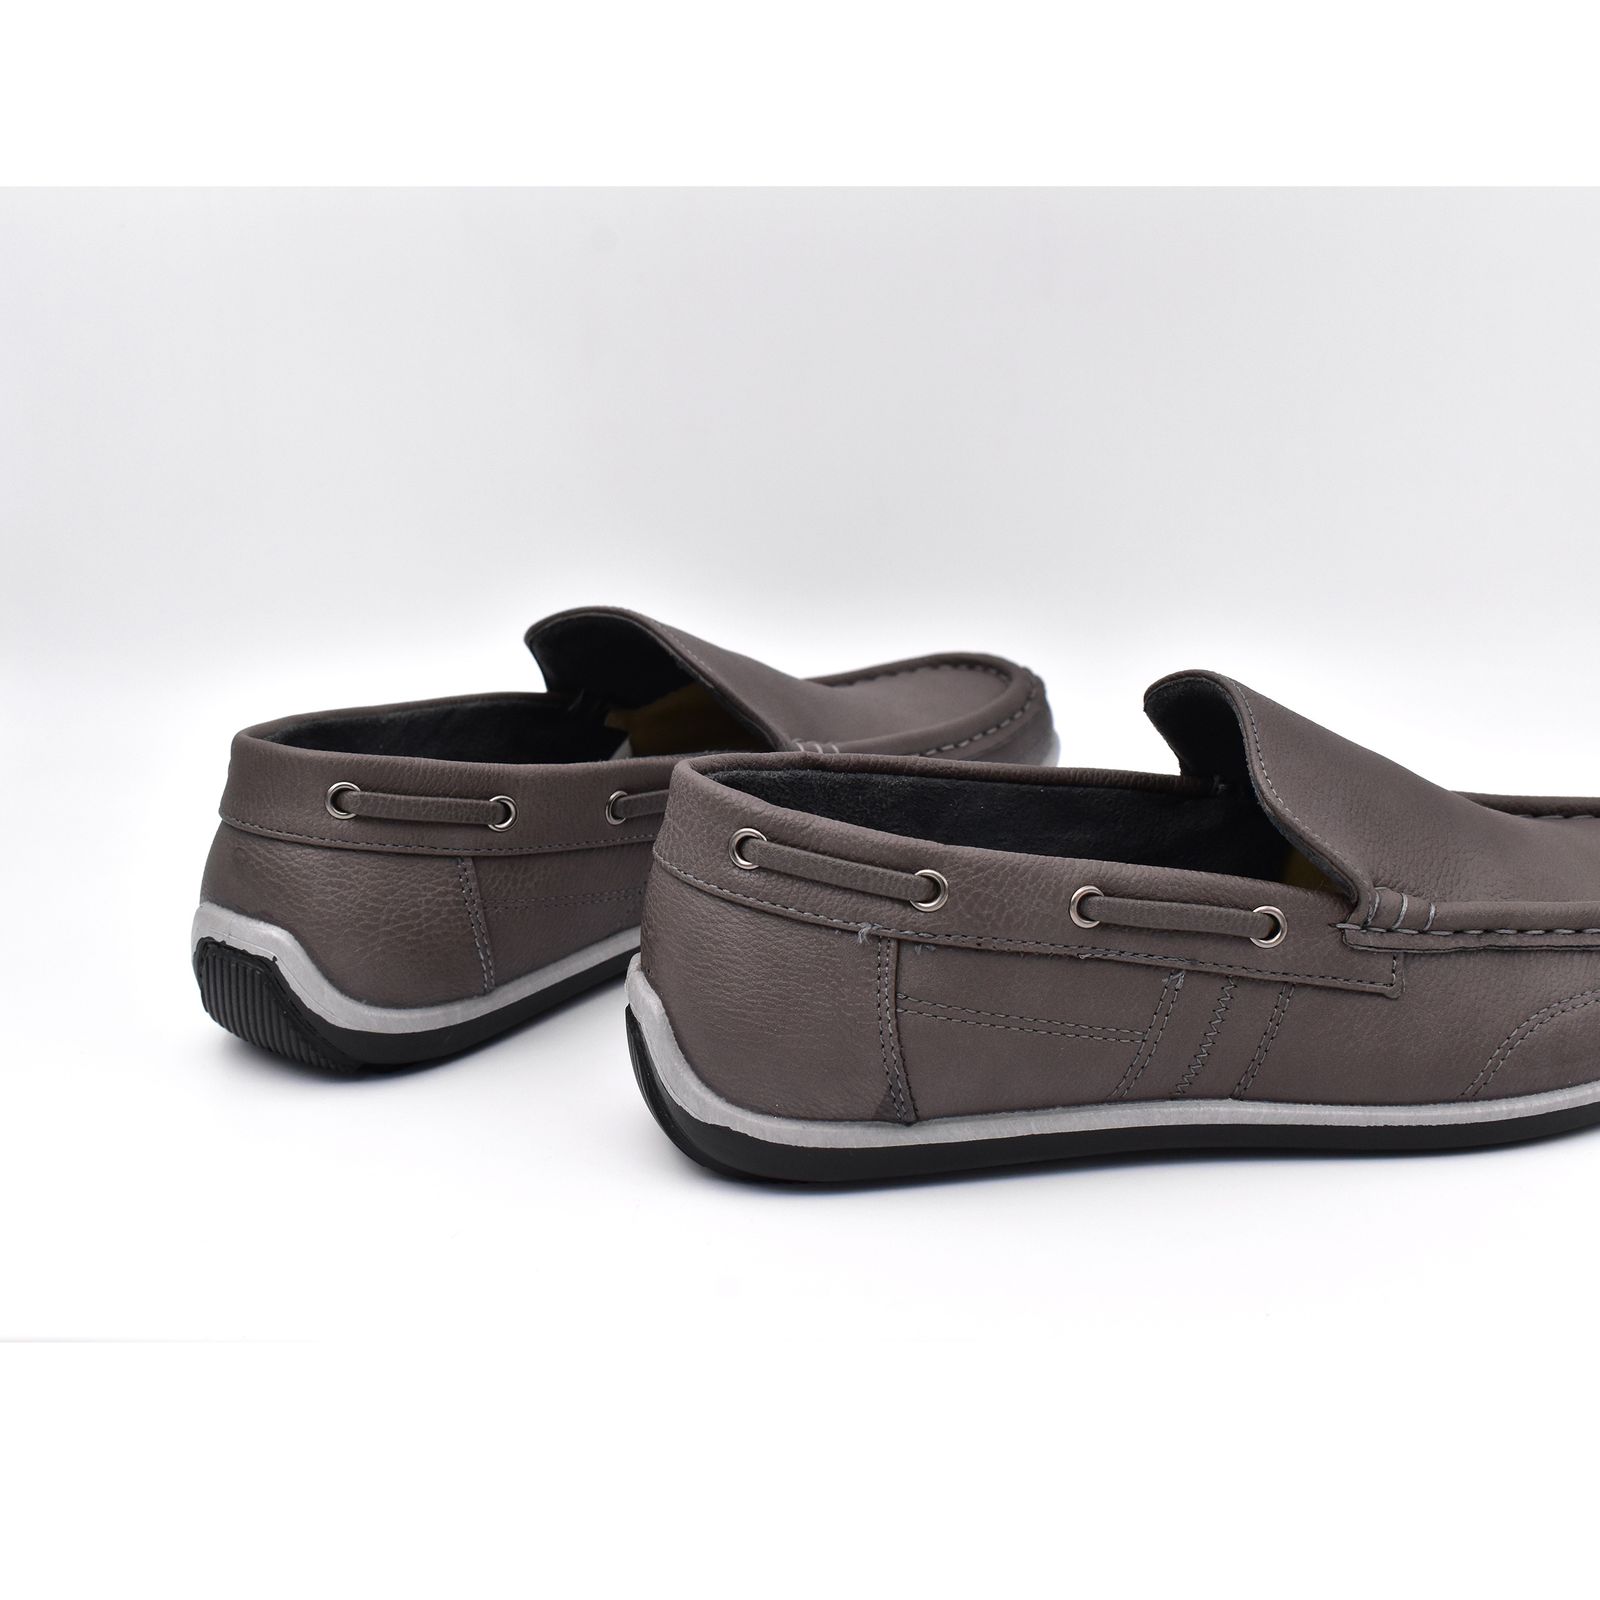 کفش روزمره مردانه پاما مدل KJ-056 کد G1539 -  - 11